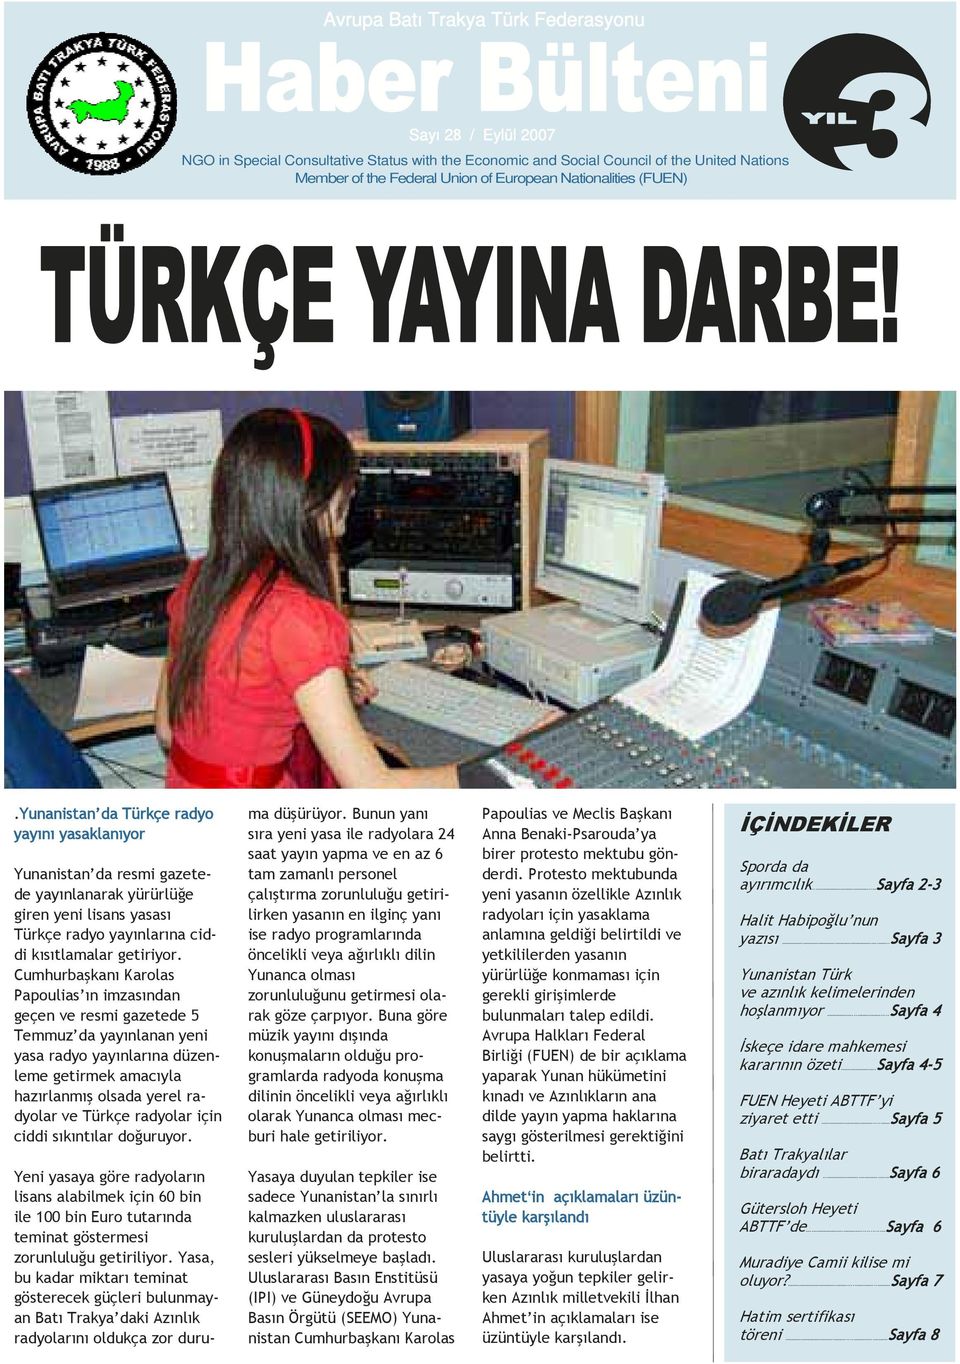 Cumhurbaşkanı Karolas Papoulias ın imzasından geçen ve resmi gazetede 5 Temmuz da yayınlanan yeni yasa radyo yayınlarına düzenleme getirmek amacıyla hazırlanmış olsada yerel radyolar ve Türkçe